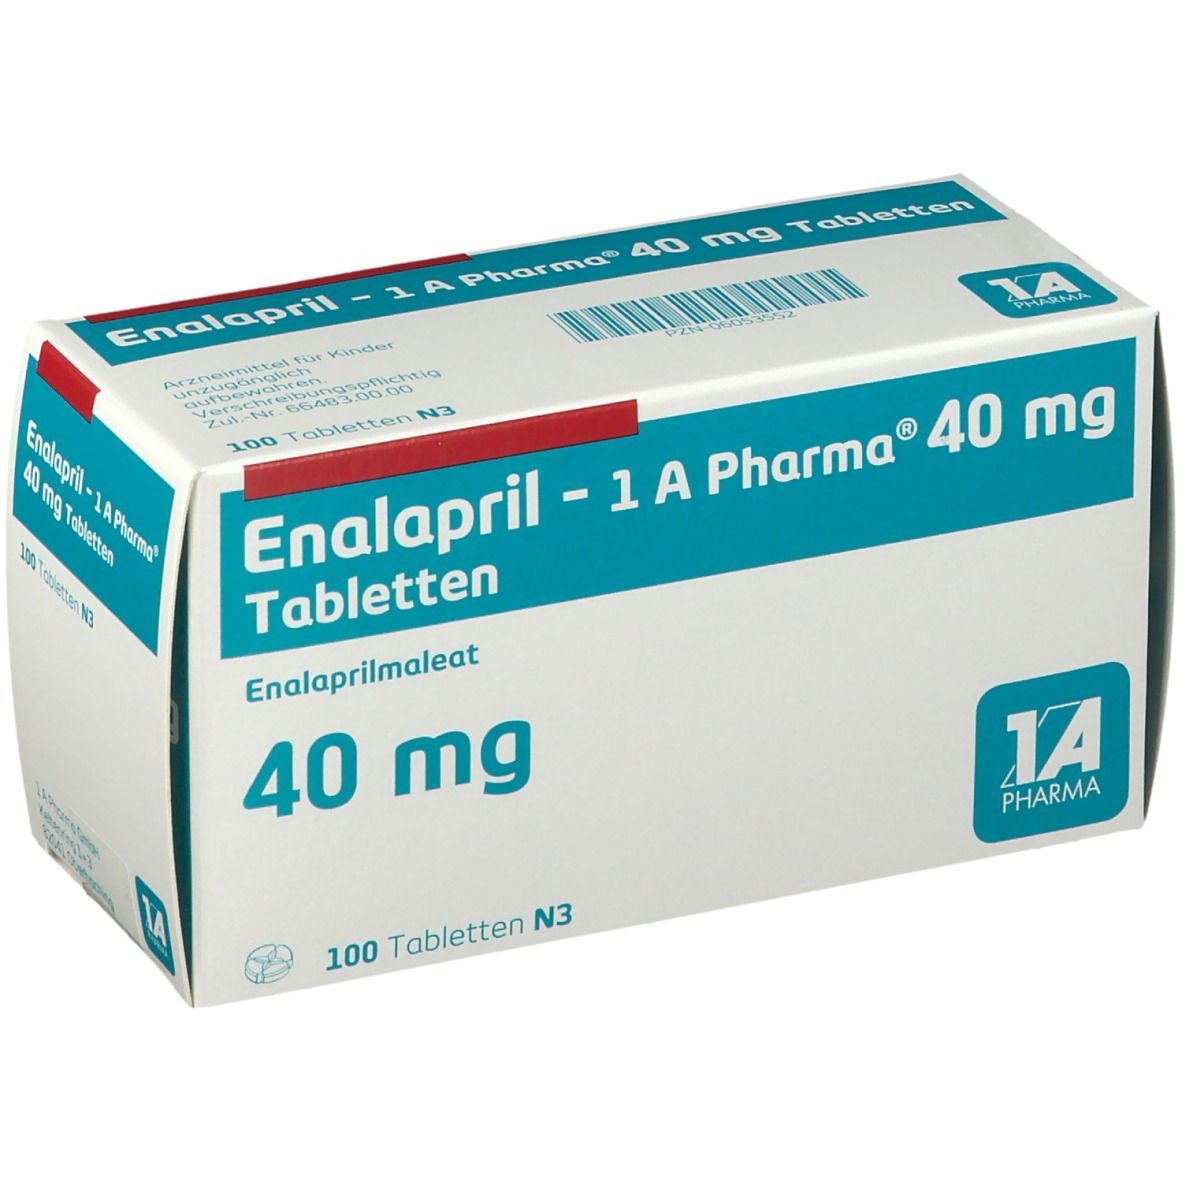 Enalapril 1A Pharma® 40Mg